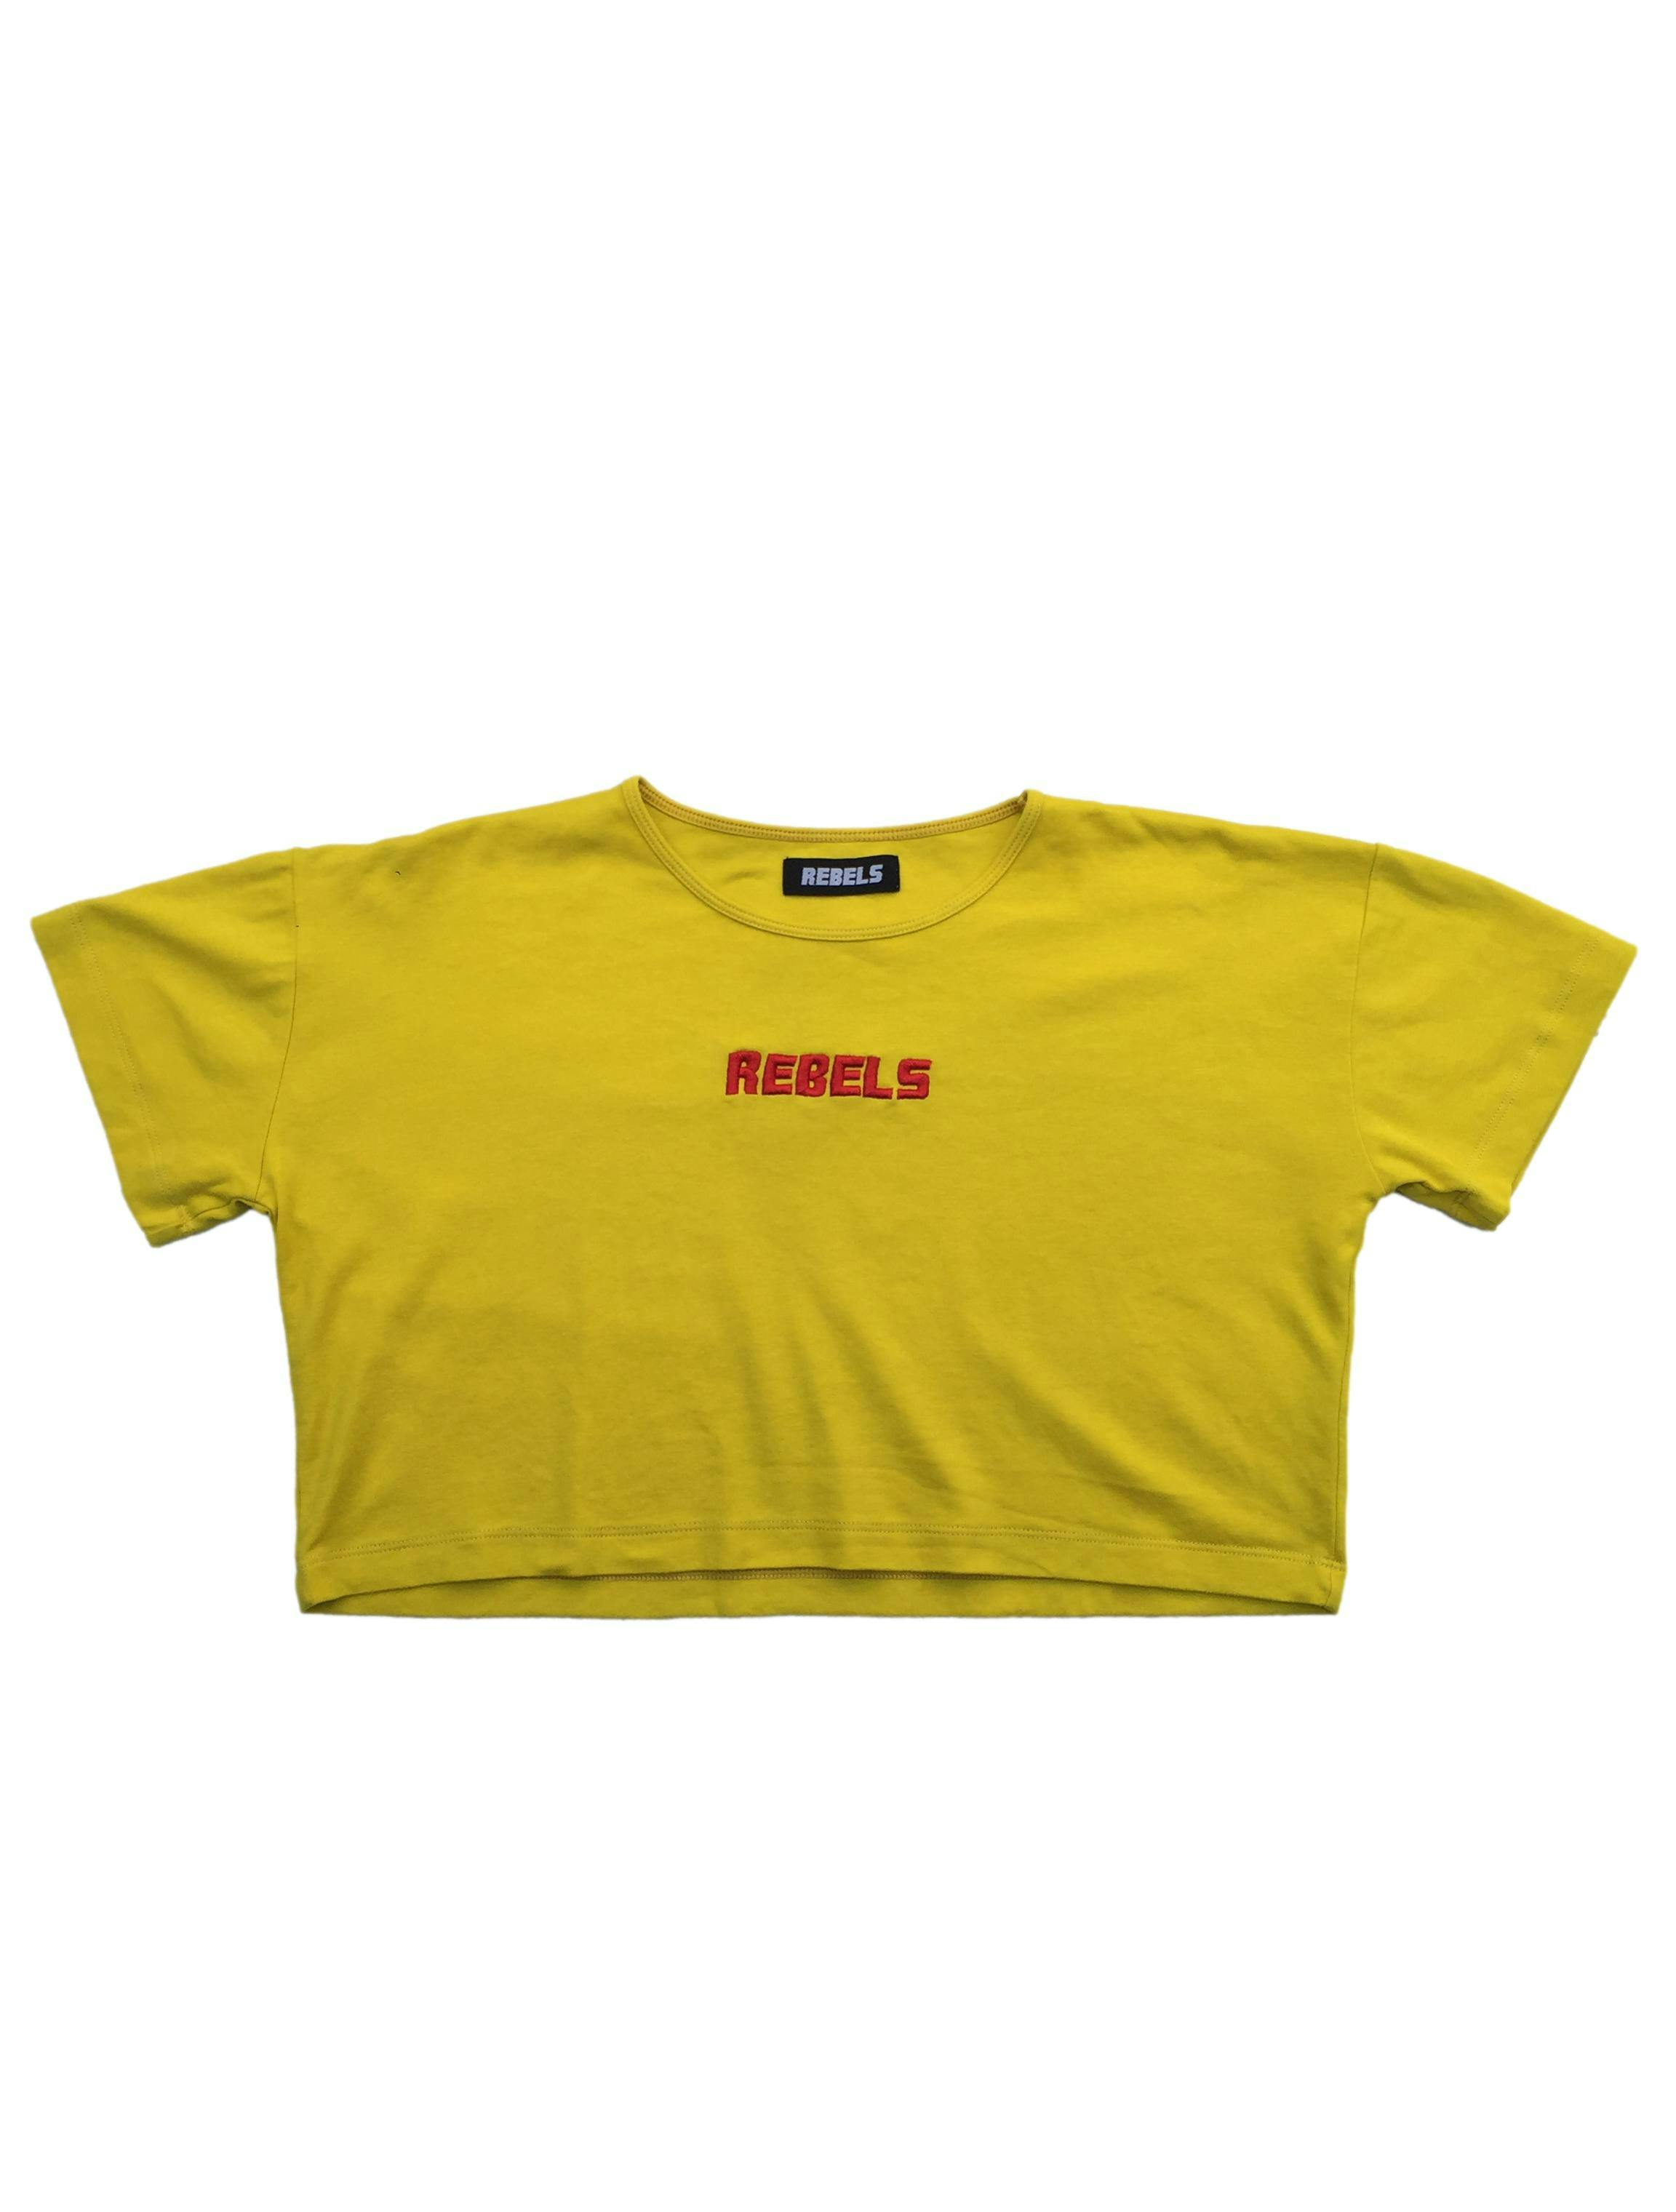 Polo crop Rebels amarillo con bordado rojo en pecho. Busto 110cm Largo 40cm